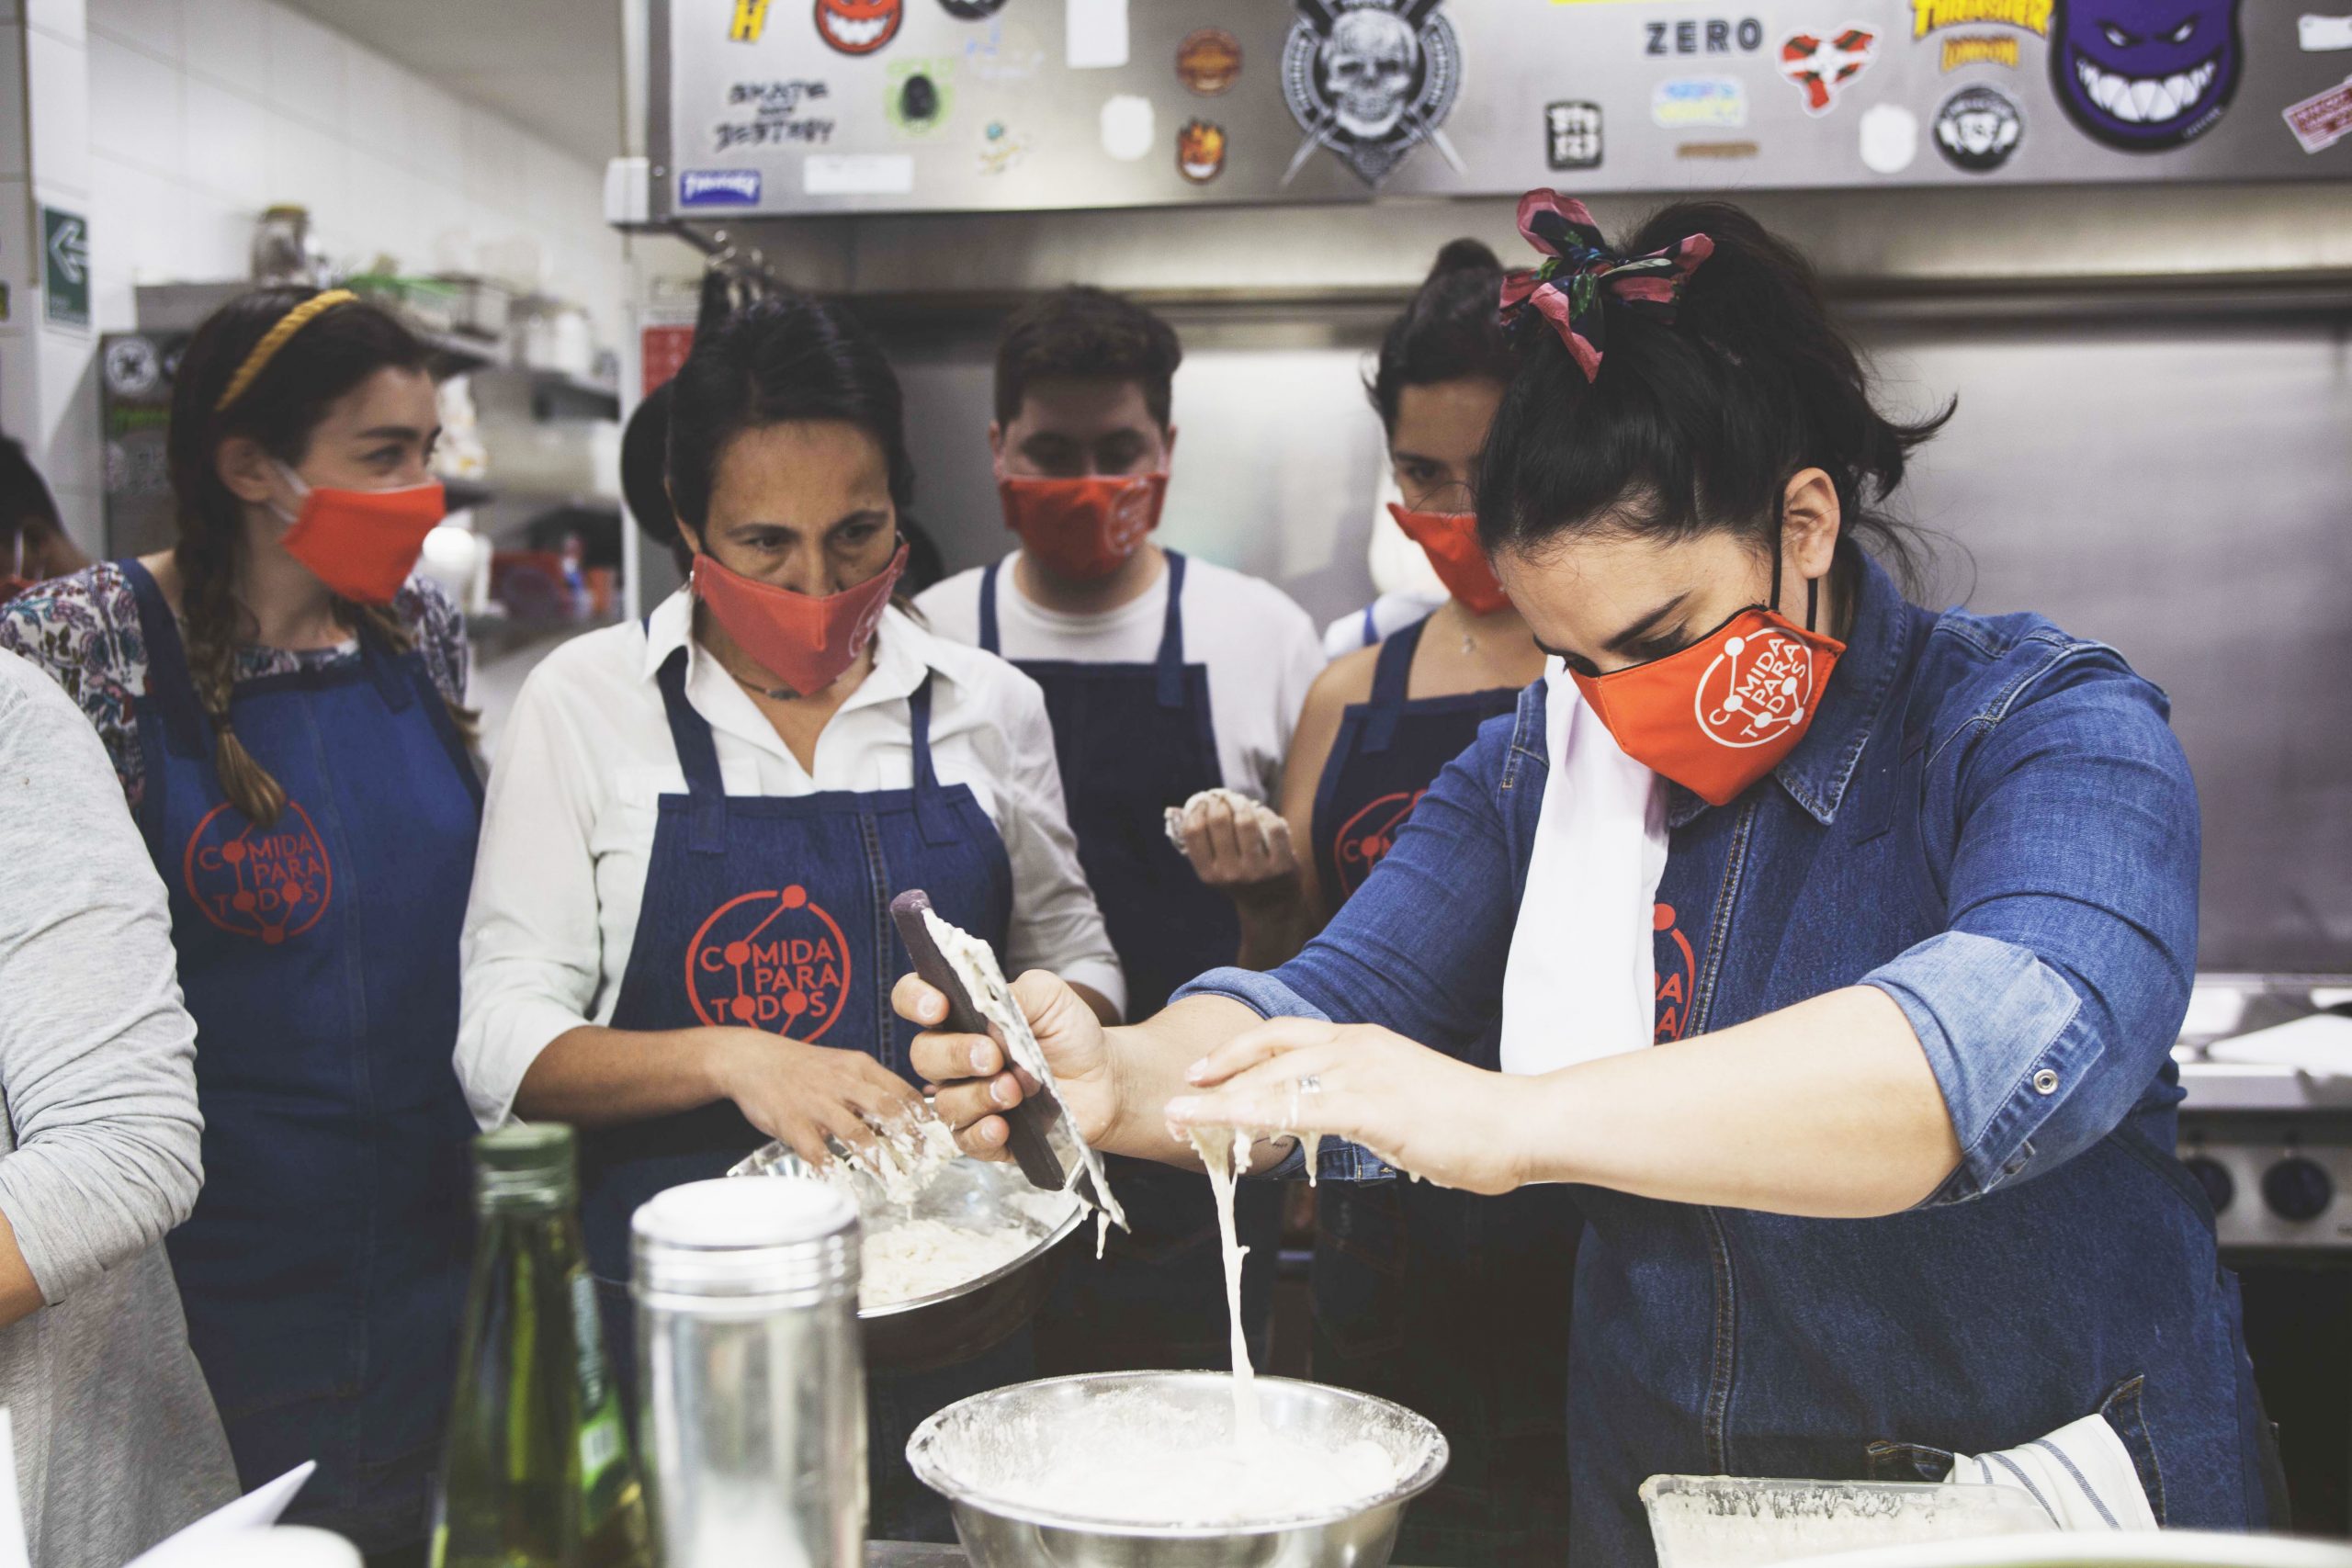 Fundación Gastronómica Social: “Seguridad Alimentaria y equidad social, a través de la gastronomía”